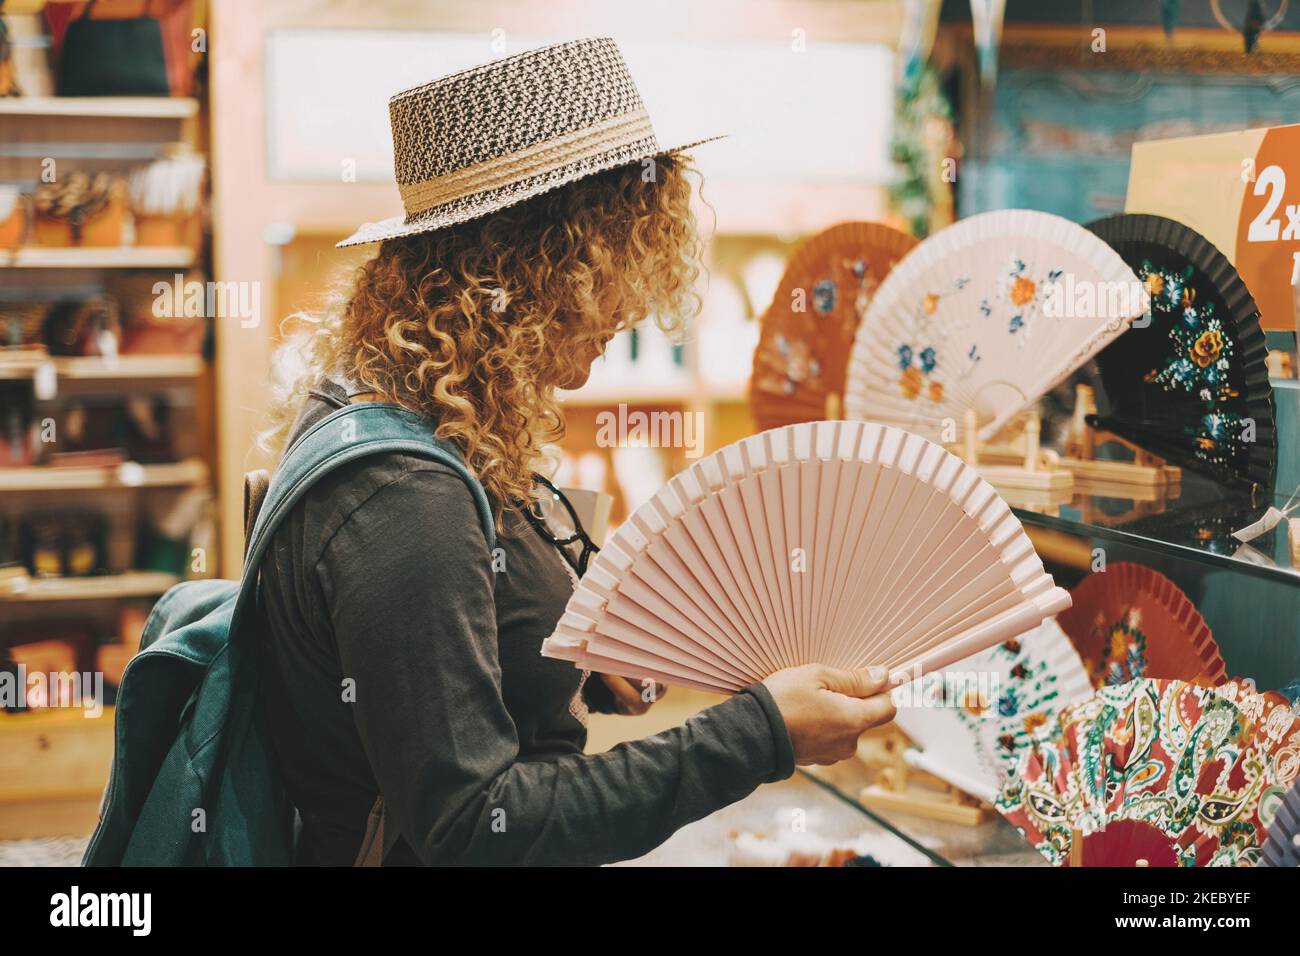 Eine Frau, die in einem Geschäft in der Freizeit einkaufen geht, berührt faltbare Ventilatoren für Hitze und Klimawandel. Konzept der weiblichen Menschen in Shop-Aktivität für Geschenke oder Vergnügen Stockfoto